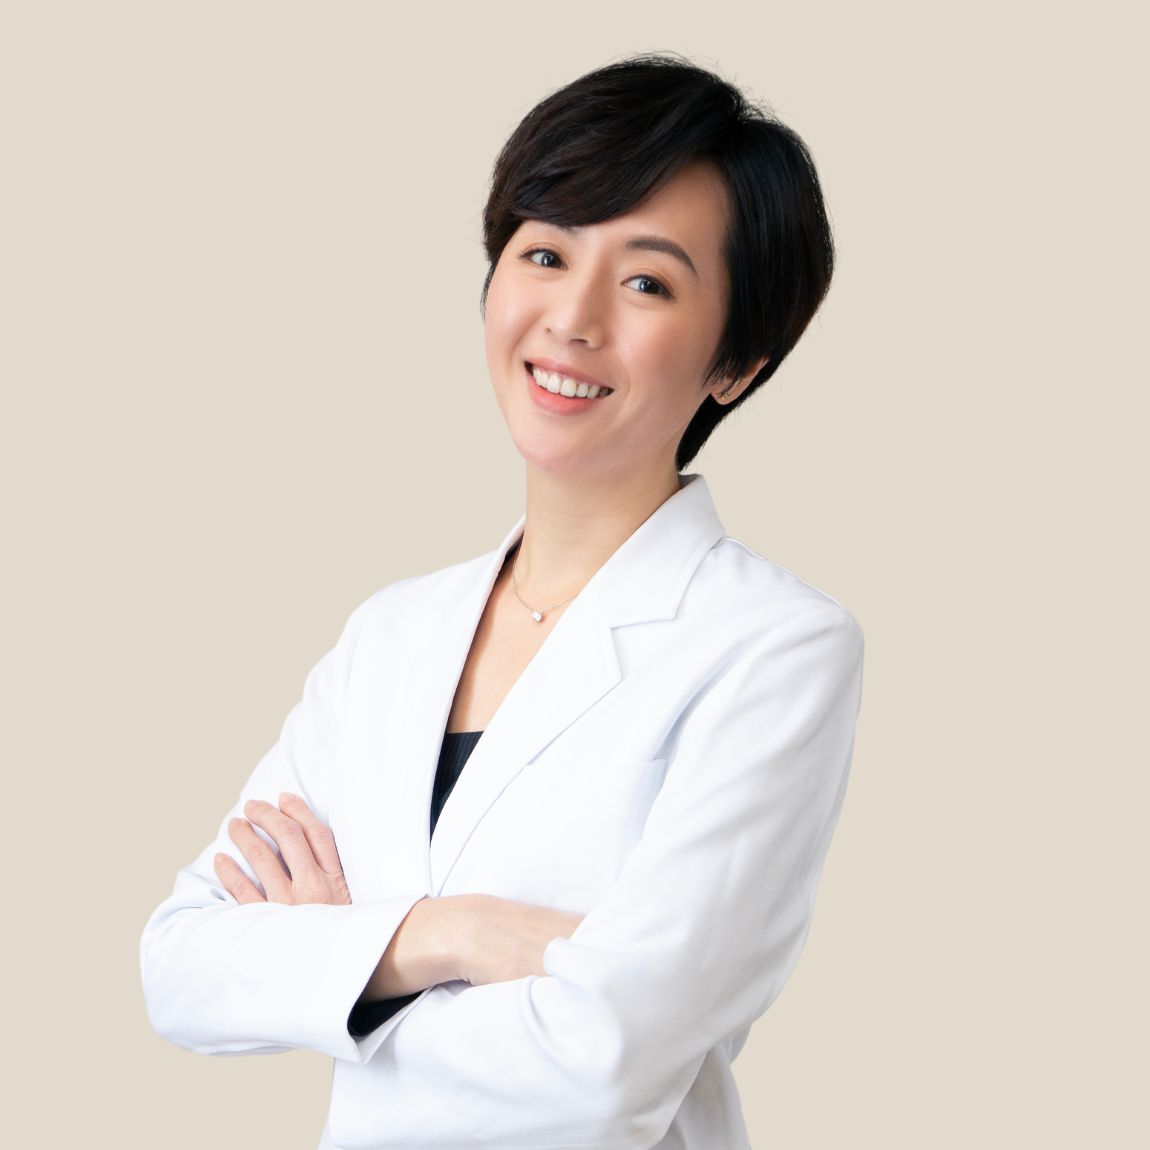 黃馨慧 Hsin-Hui Huang, MD, 醫師.